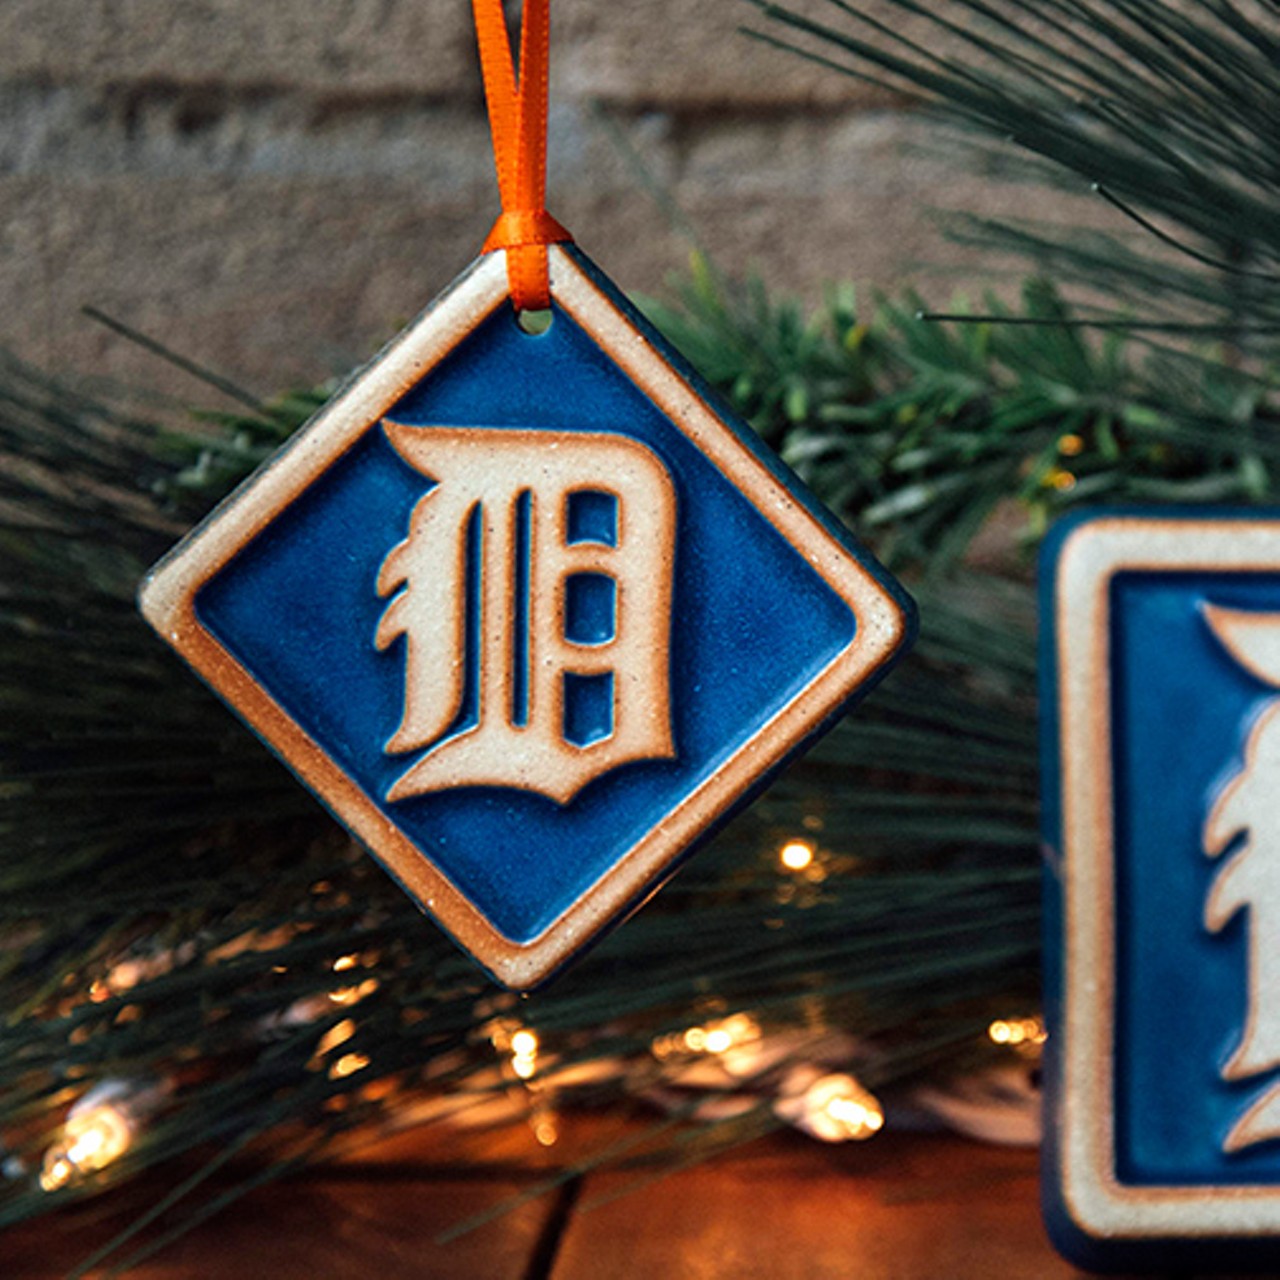 Detroit Tigers tile ornament.